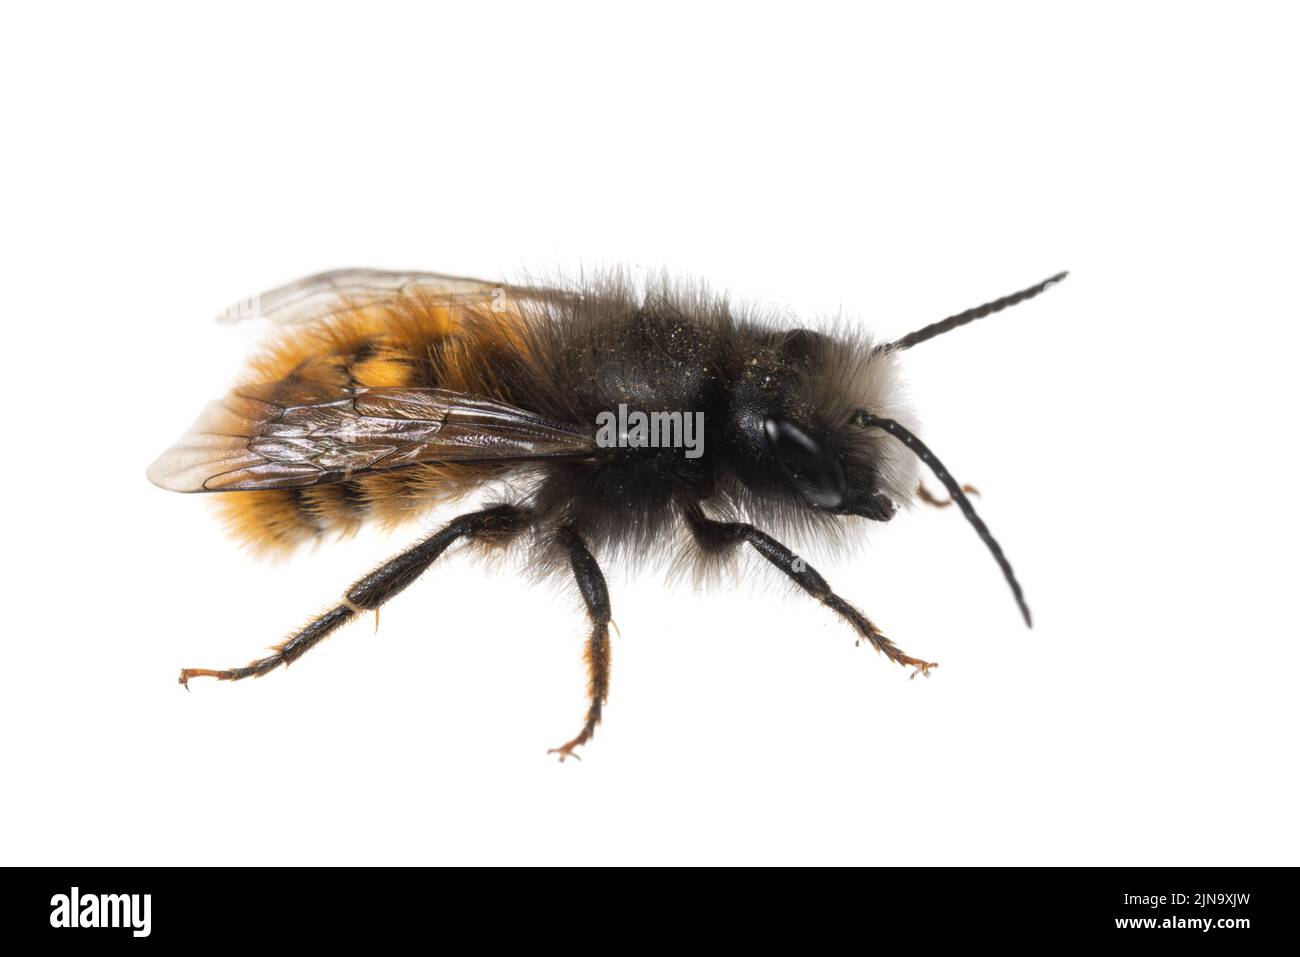 Insectes d'europe - abeilles: Vue latérale macro de l'abeille mâle Osmia cornuta Orchard européen (gehörnte Mauerbiene allemand) isolée sur fond blanc Banque D'Images